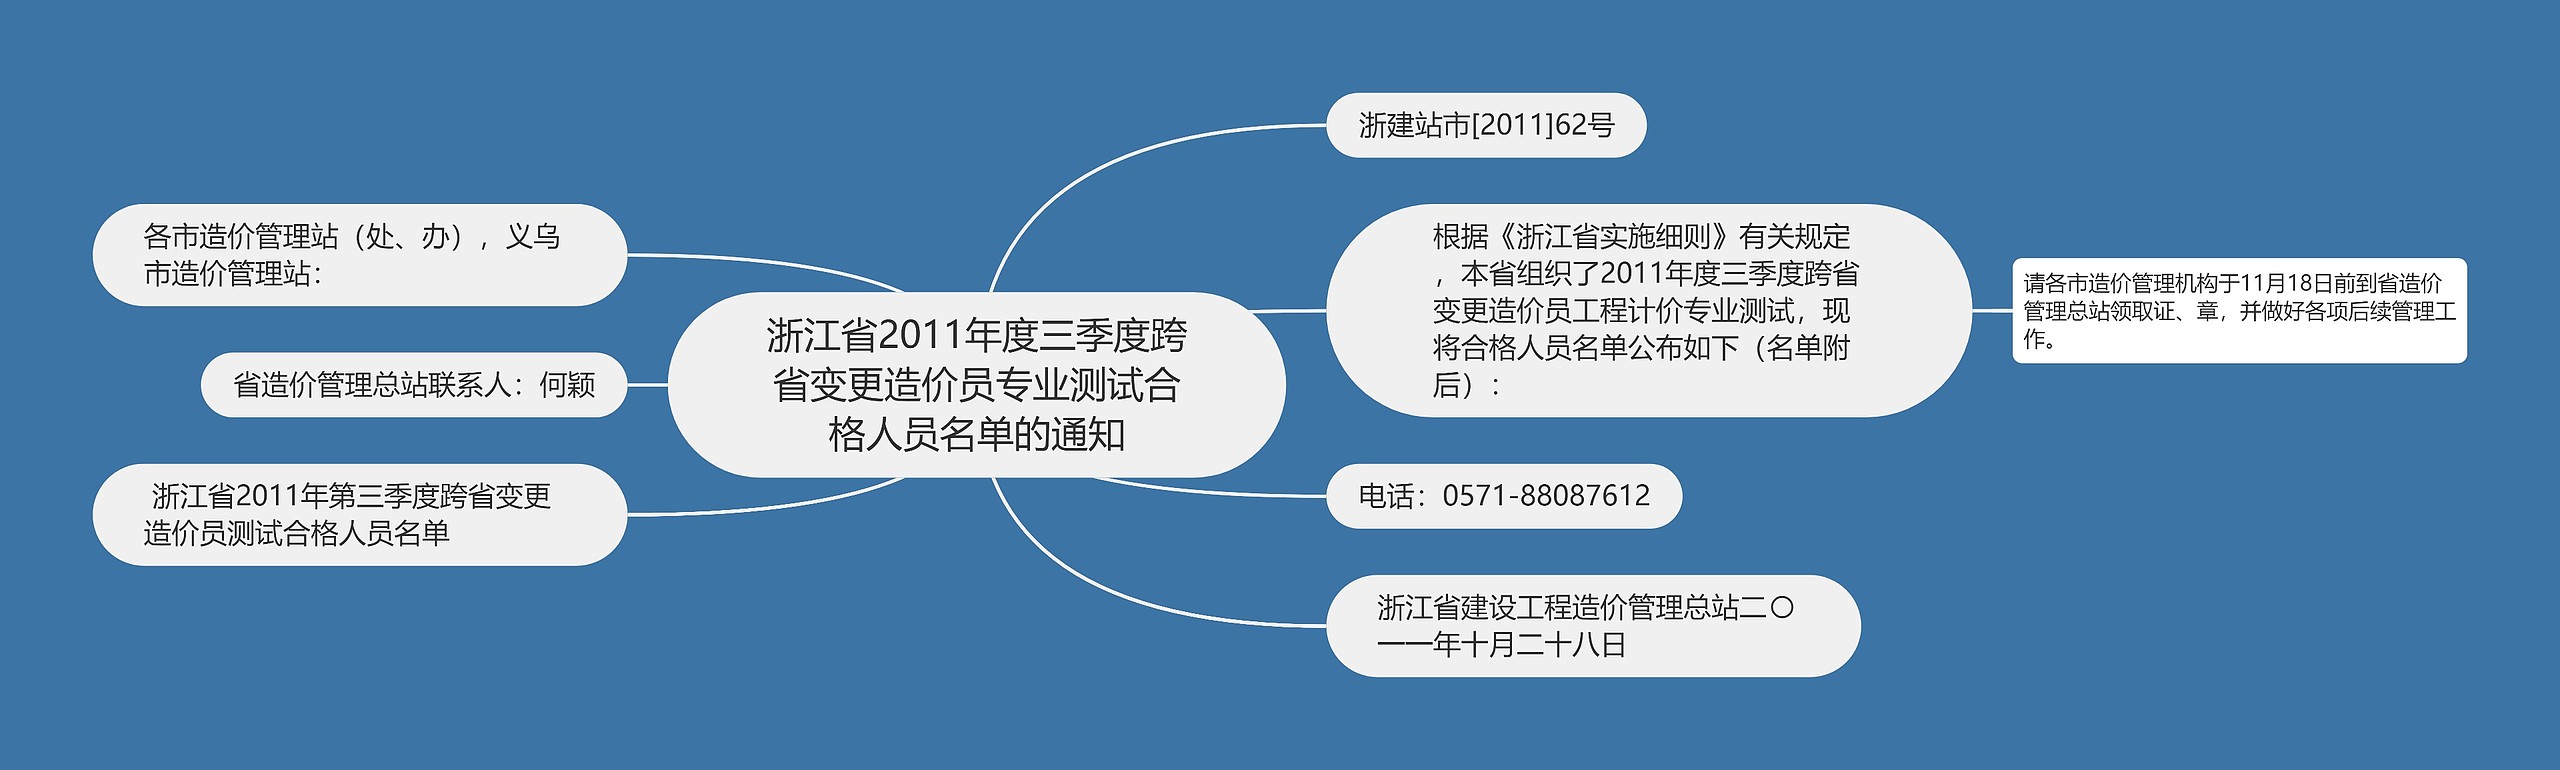 浙江省2011年度三季度跨省变更造价员专业测试合格人员名单的通知思维导图